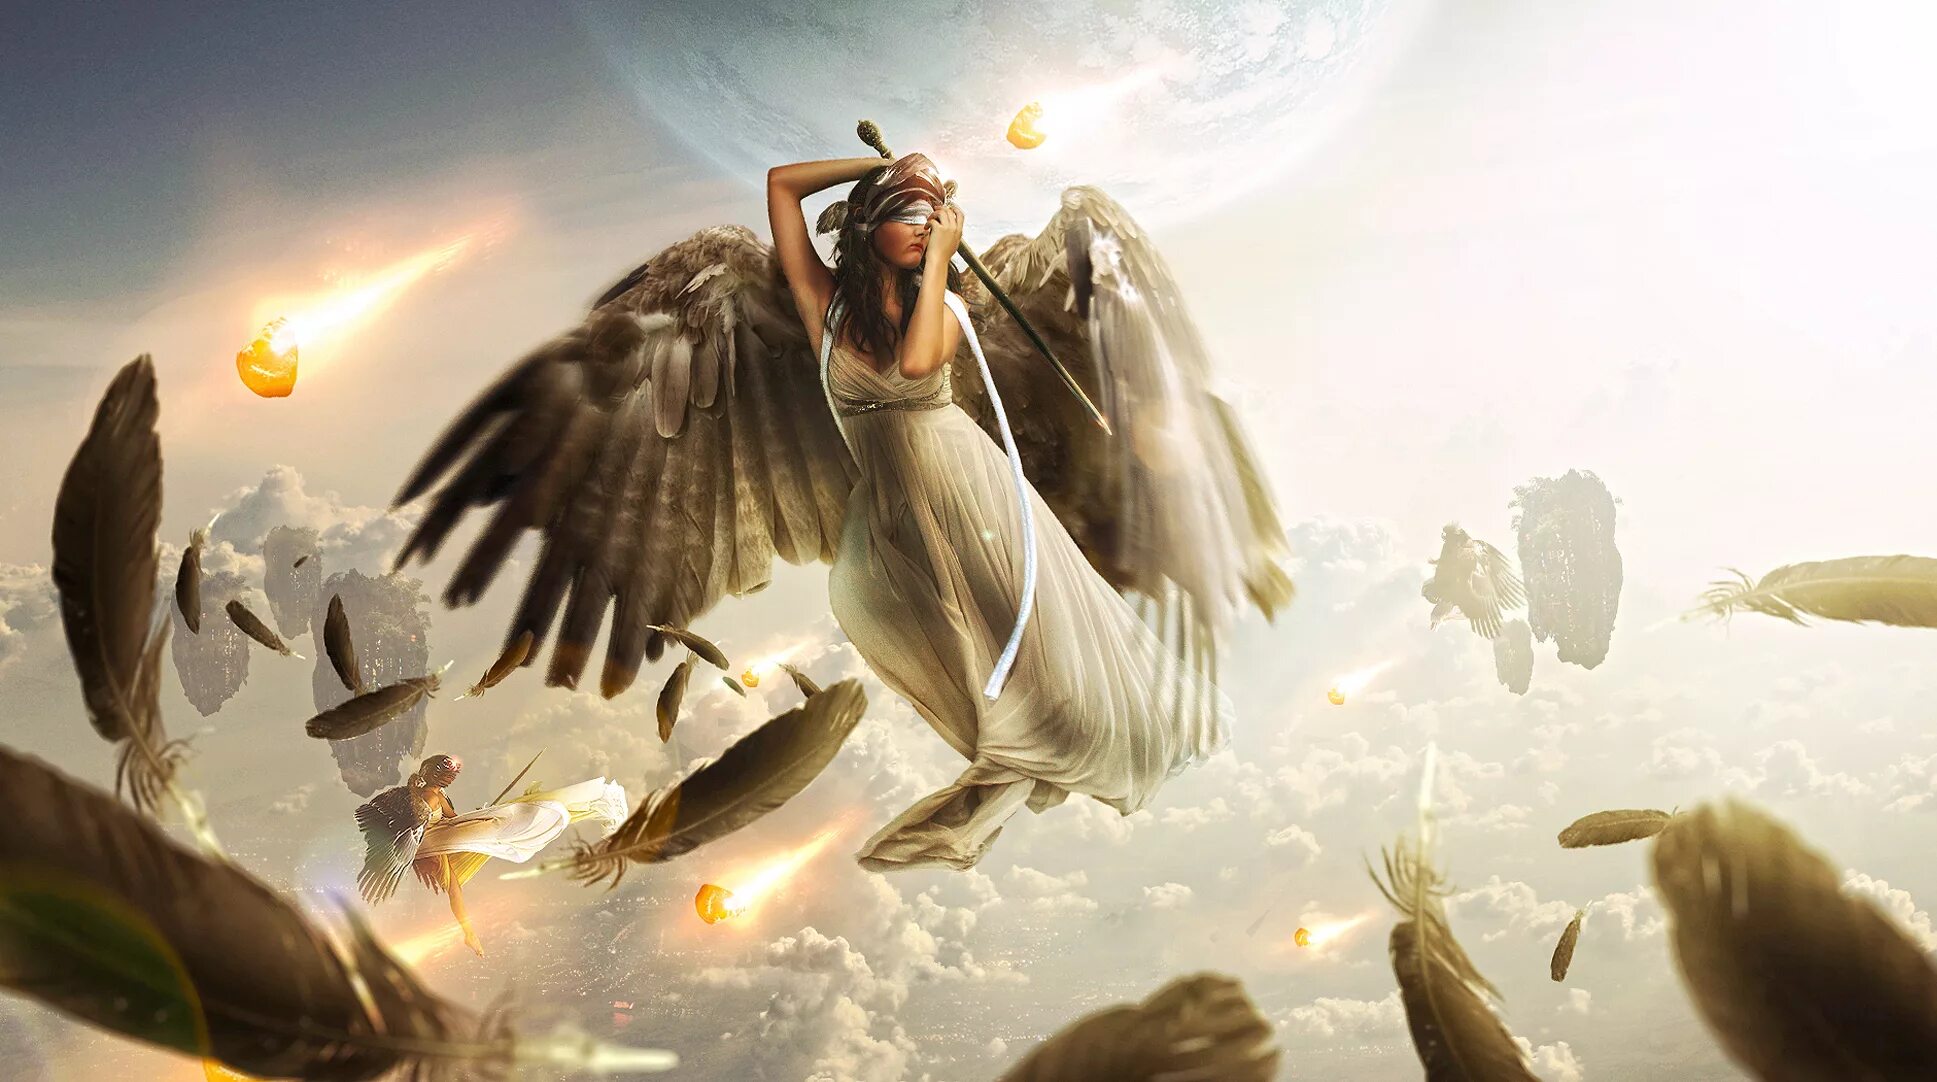 Читать всю серию ангел. Ангел фэнтези. Девушка - ангел. Девушка с крыльями. Обои ангел.